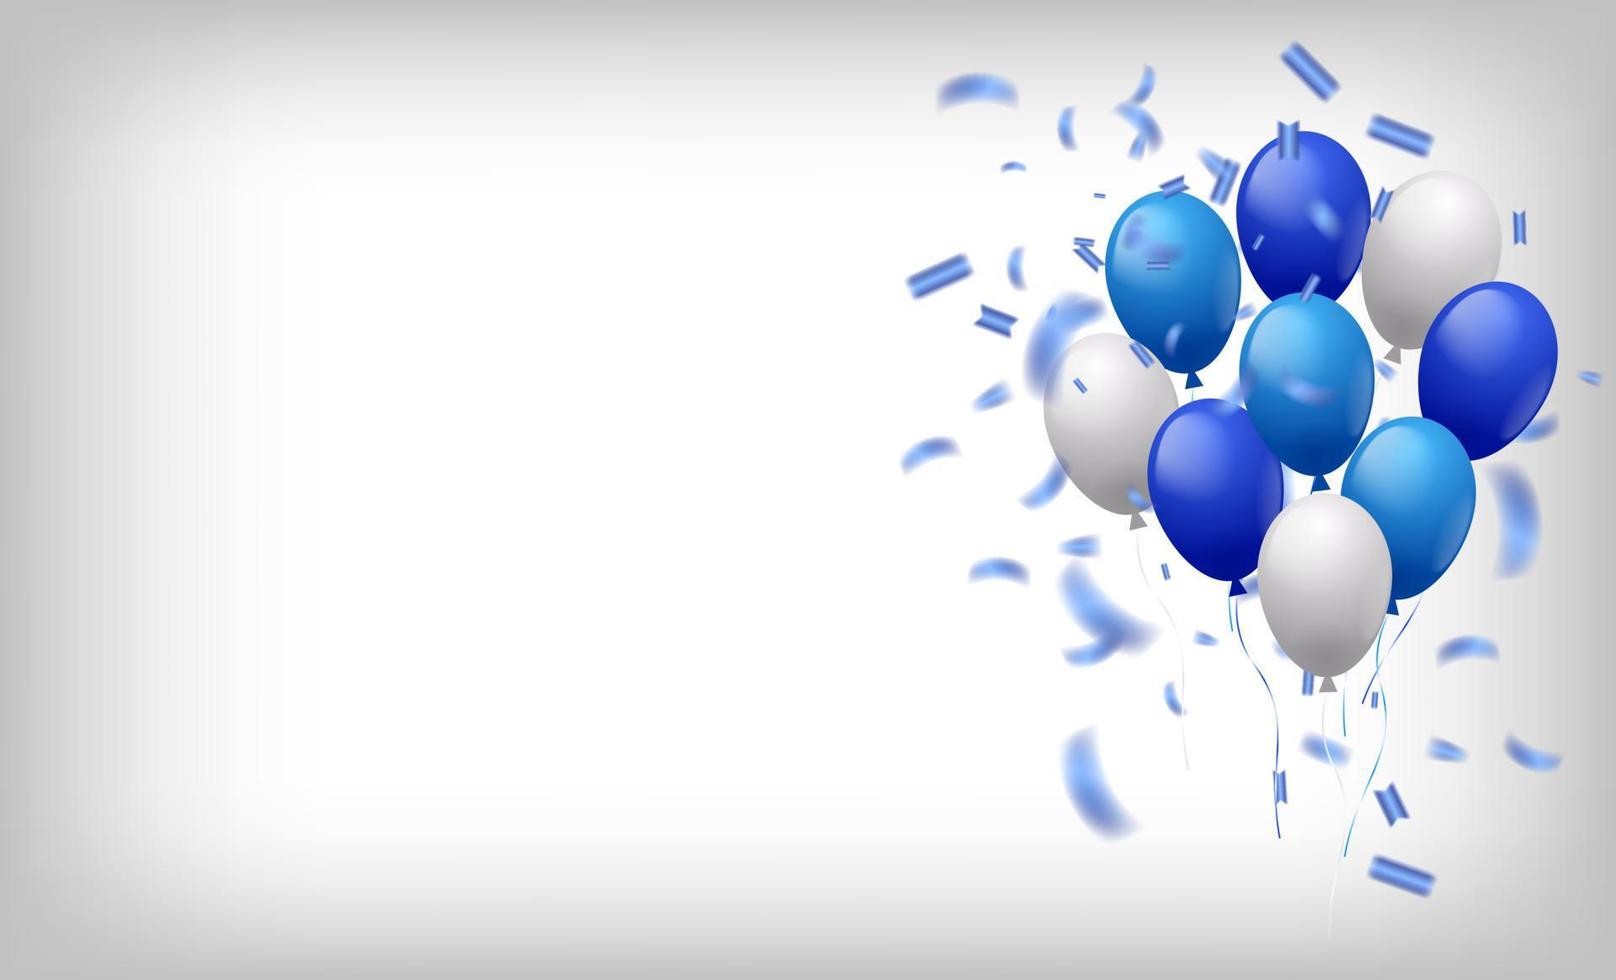 bannière de fête de célébration sur fond blanc avec des ballons de couleur bleue. illustration vectorielle. grande carte d'ouverture carte de voeux de luxe riche. modèle de cadre. vecteur